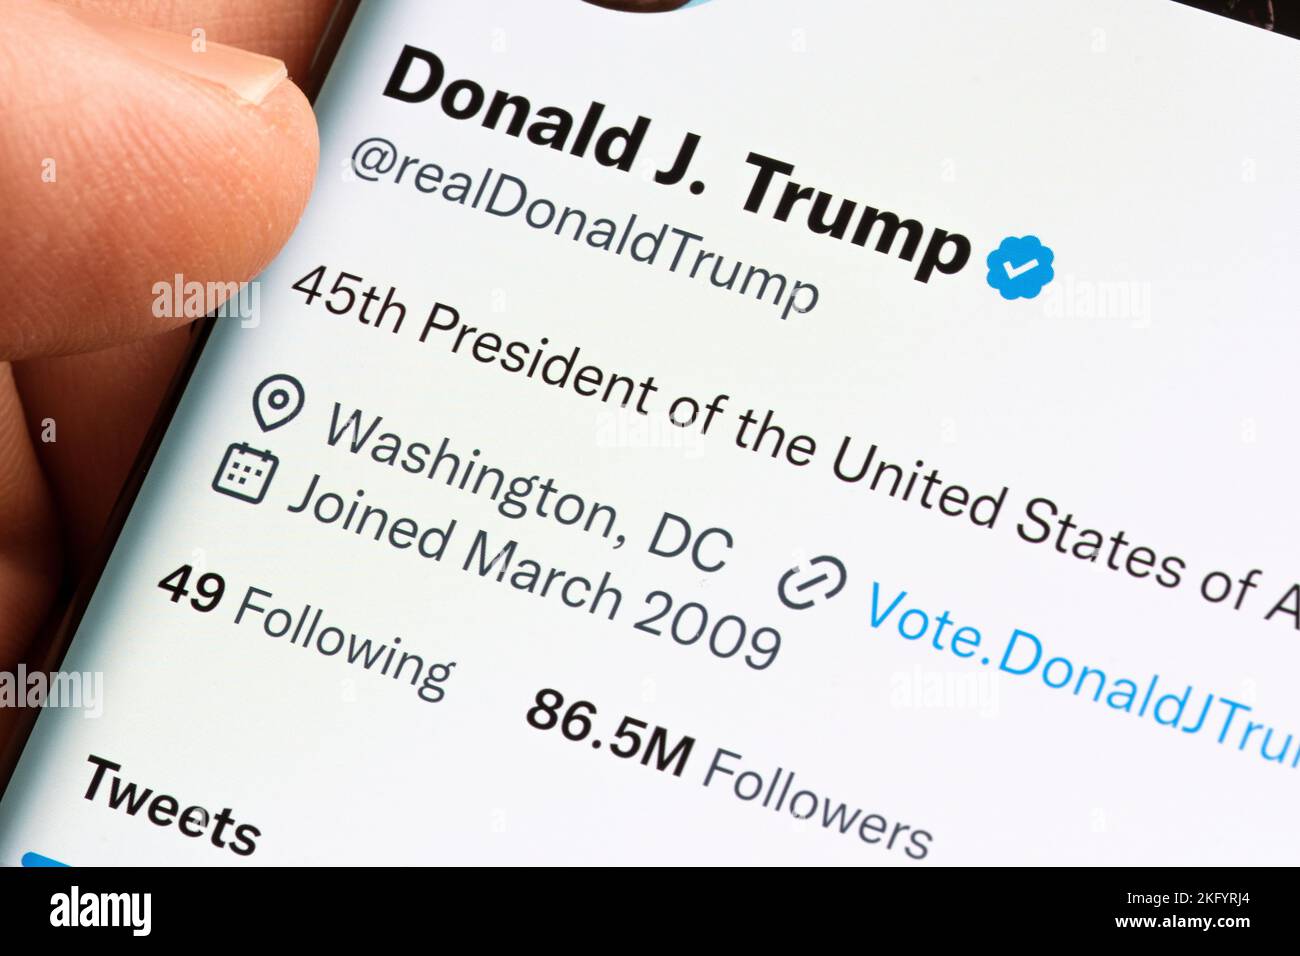 La page Twitter officielle de Donald Trump qui a été rétablie par Elon Musk après le vote public vu sur l'écran de smartphone tenir en main. Stafford, États-Unis Banque D'Images